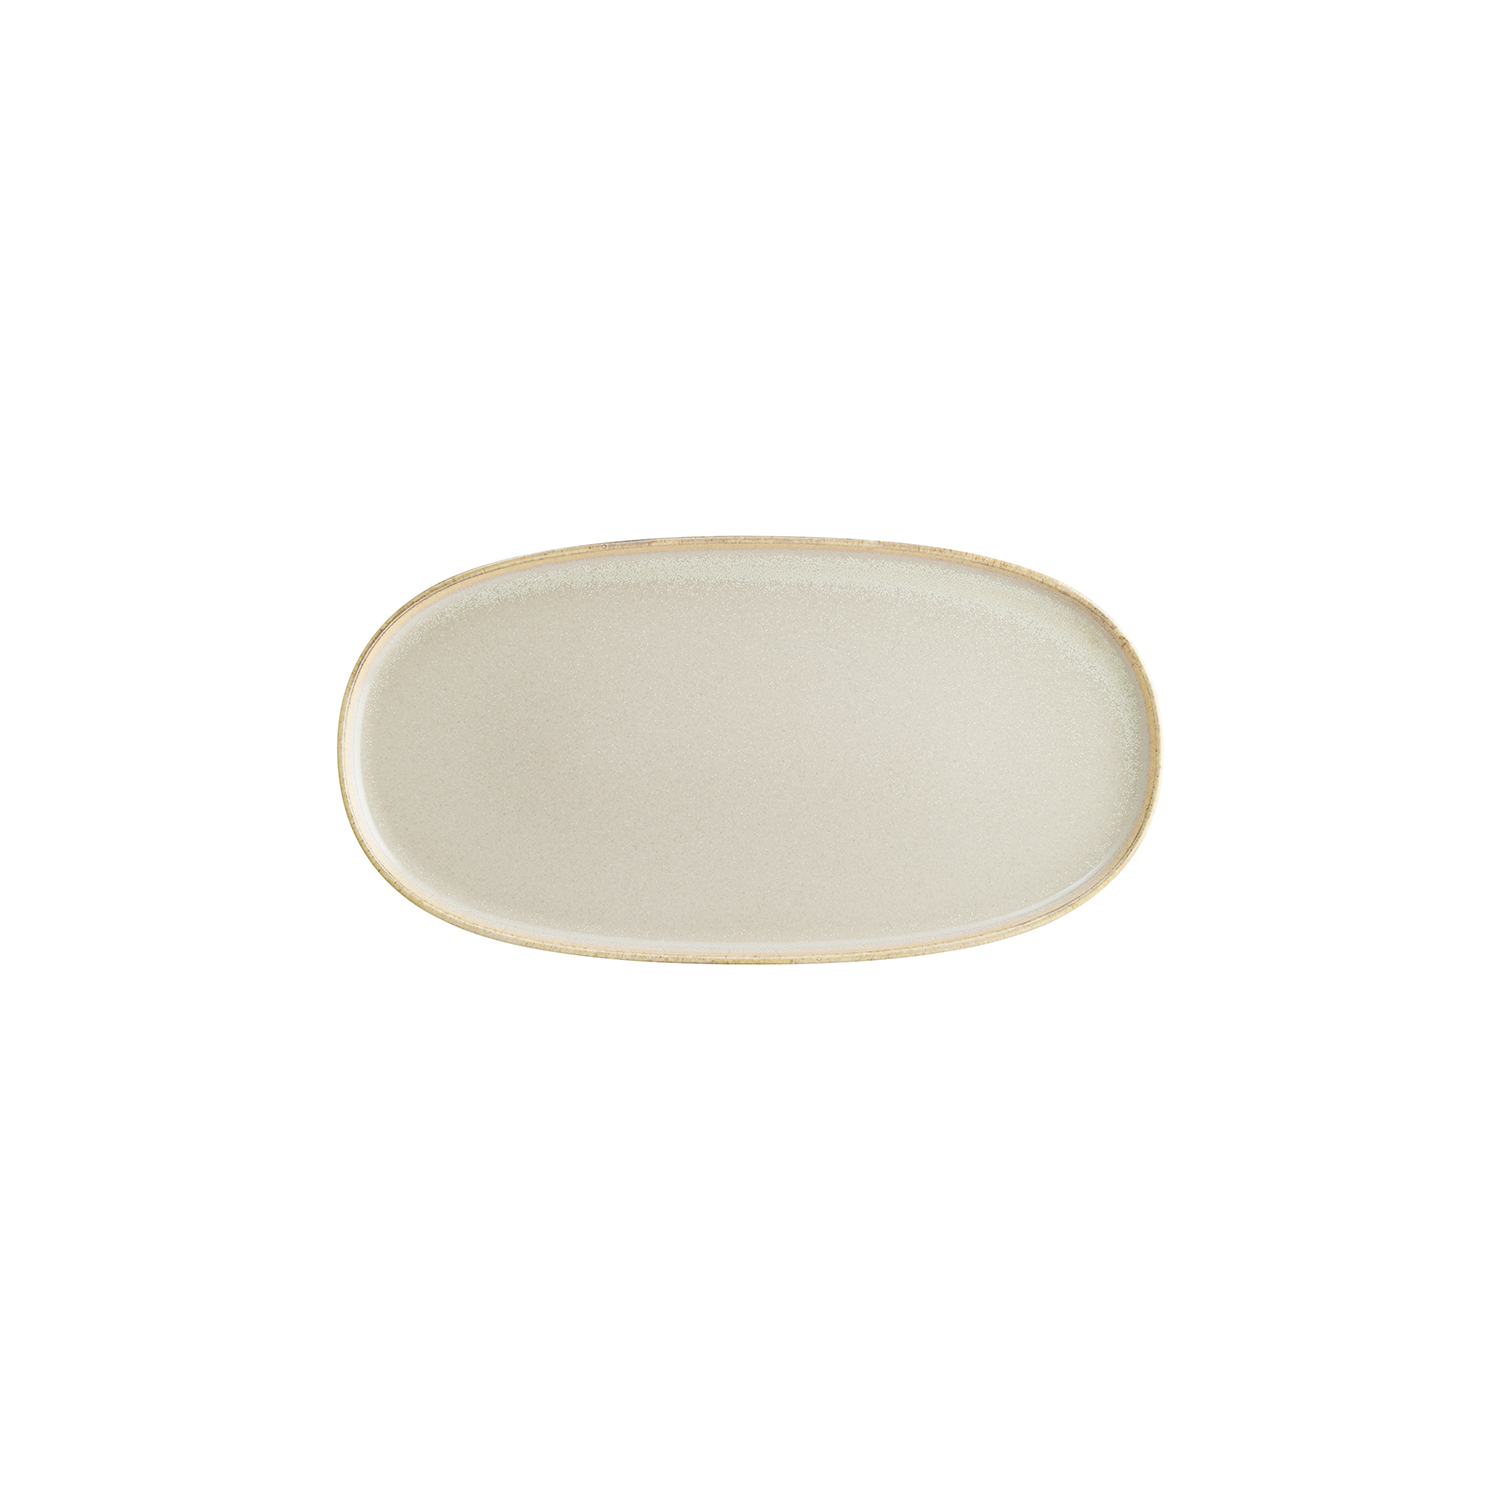 Sand Porcelain Platter Oval